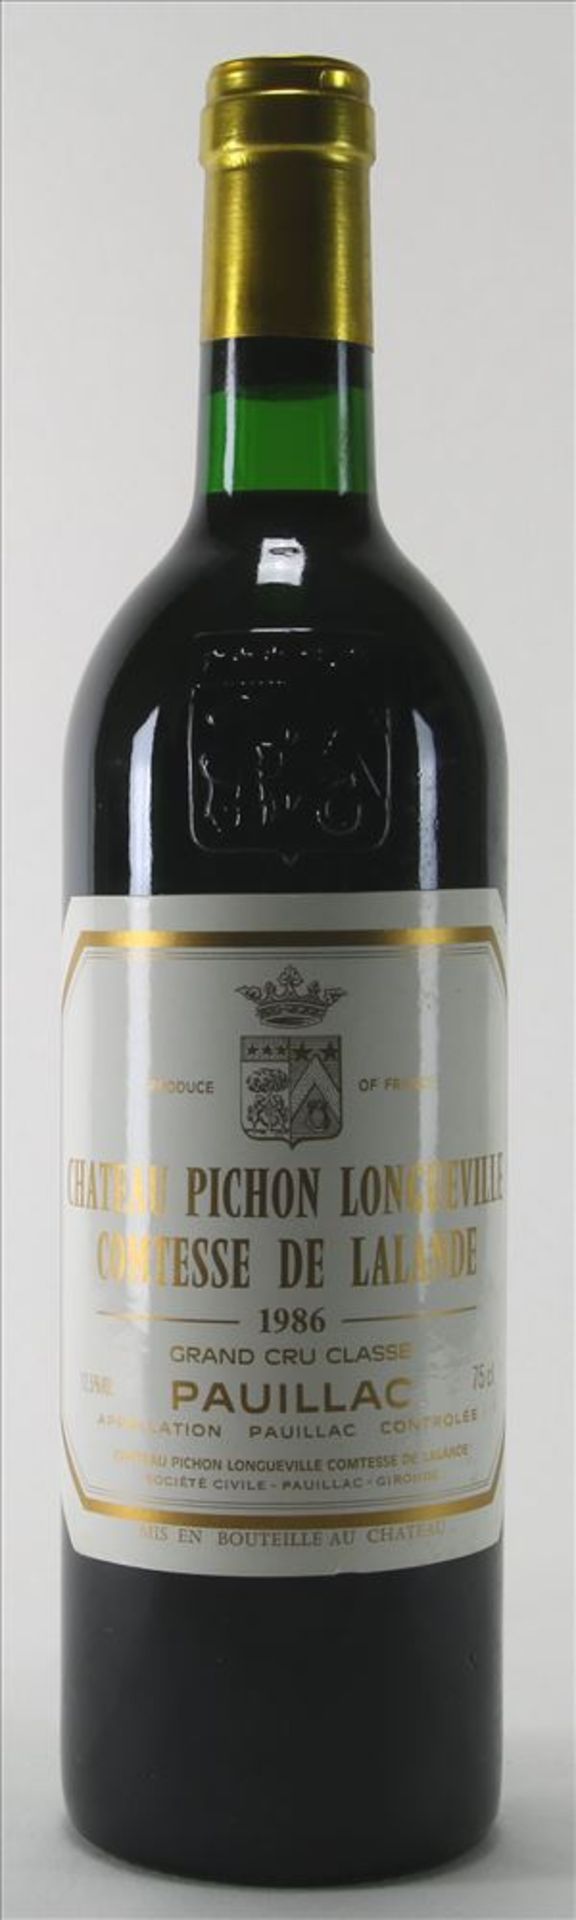 1 Flasche Bordeaux 1986 Chateau Pichon Longueville Comtesse de Lalande, Pauillac. 0,75 Liter.